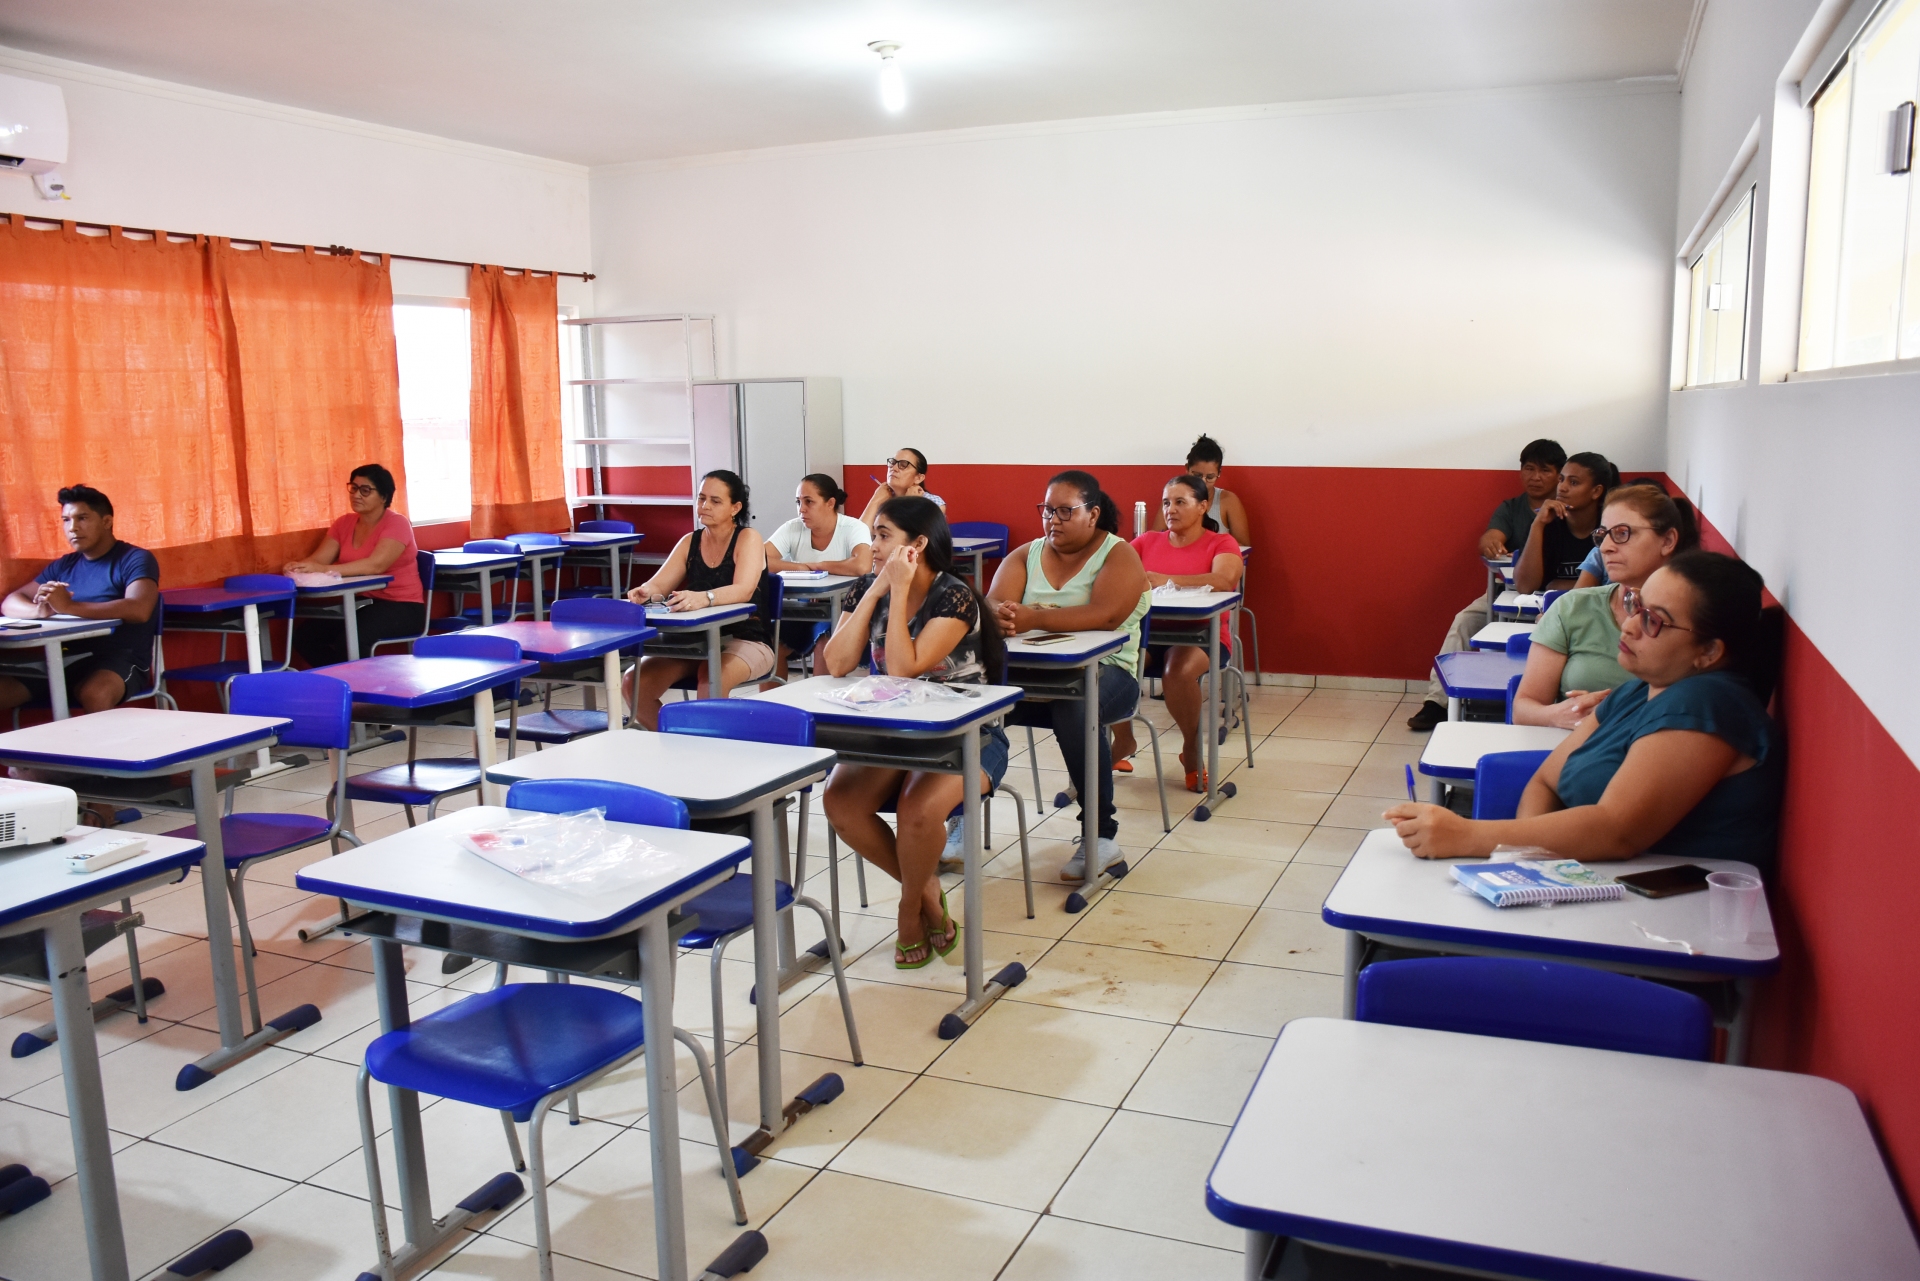 Merendeiros das escolas recebem capacitação em Gaúcha do Norte